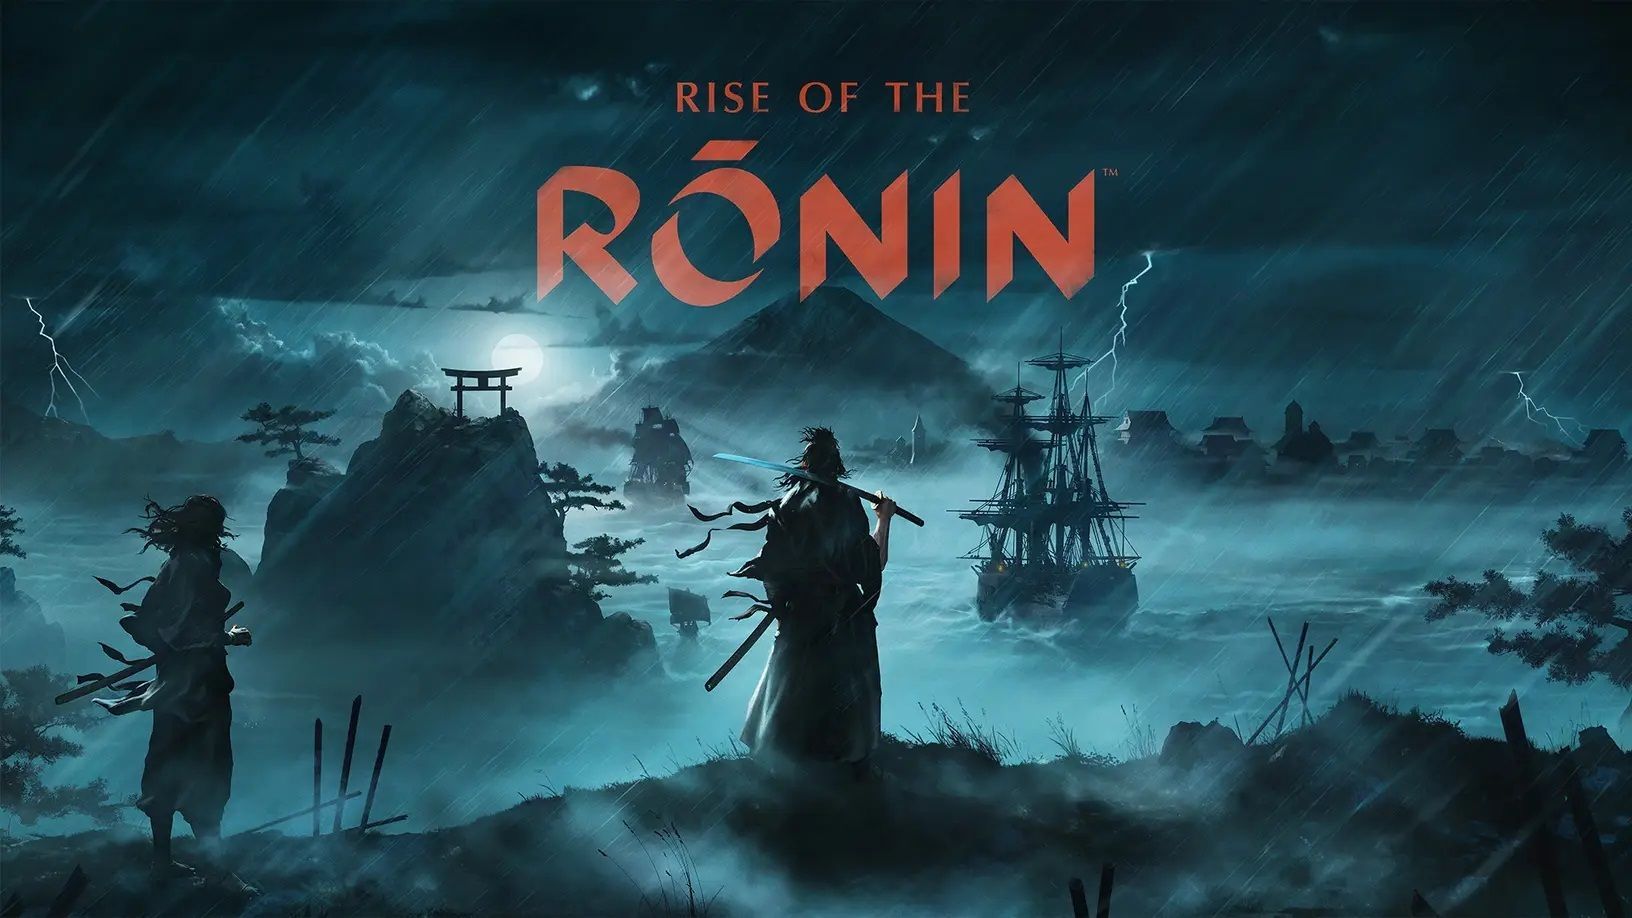 Rise of the Ronin confirme la coopérative, les modes de difficulté, et plus encore.